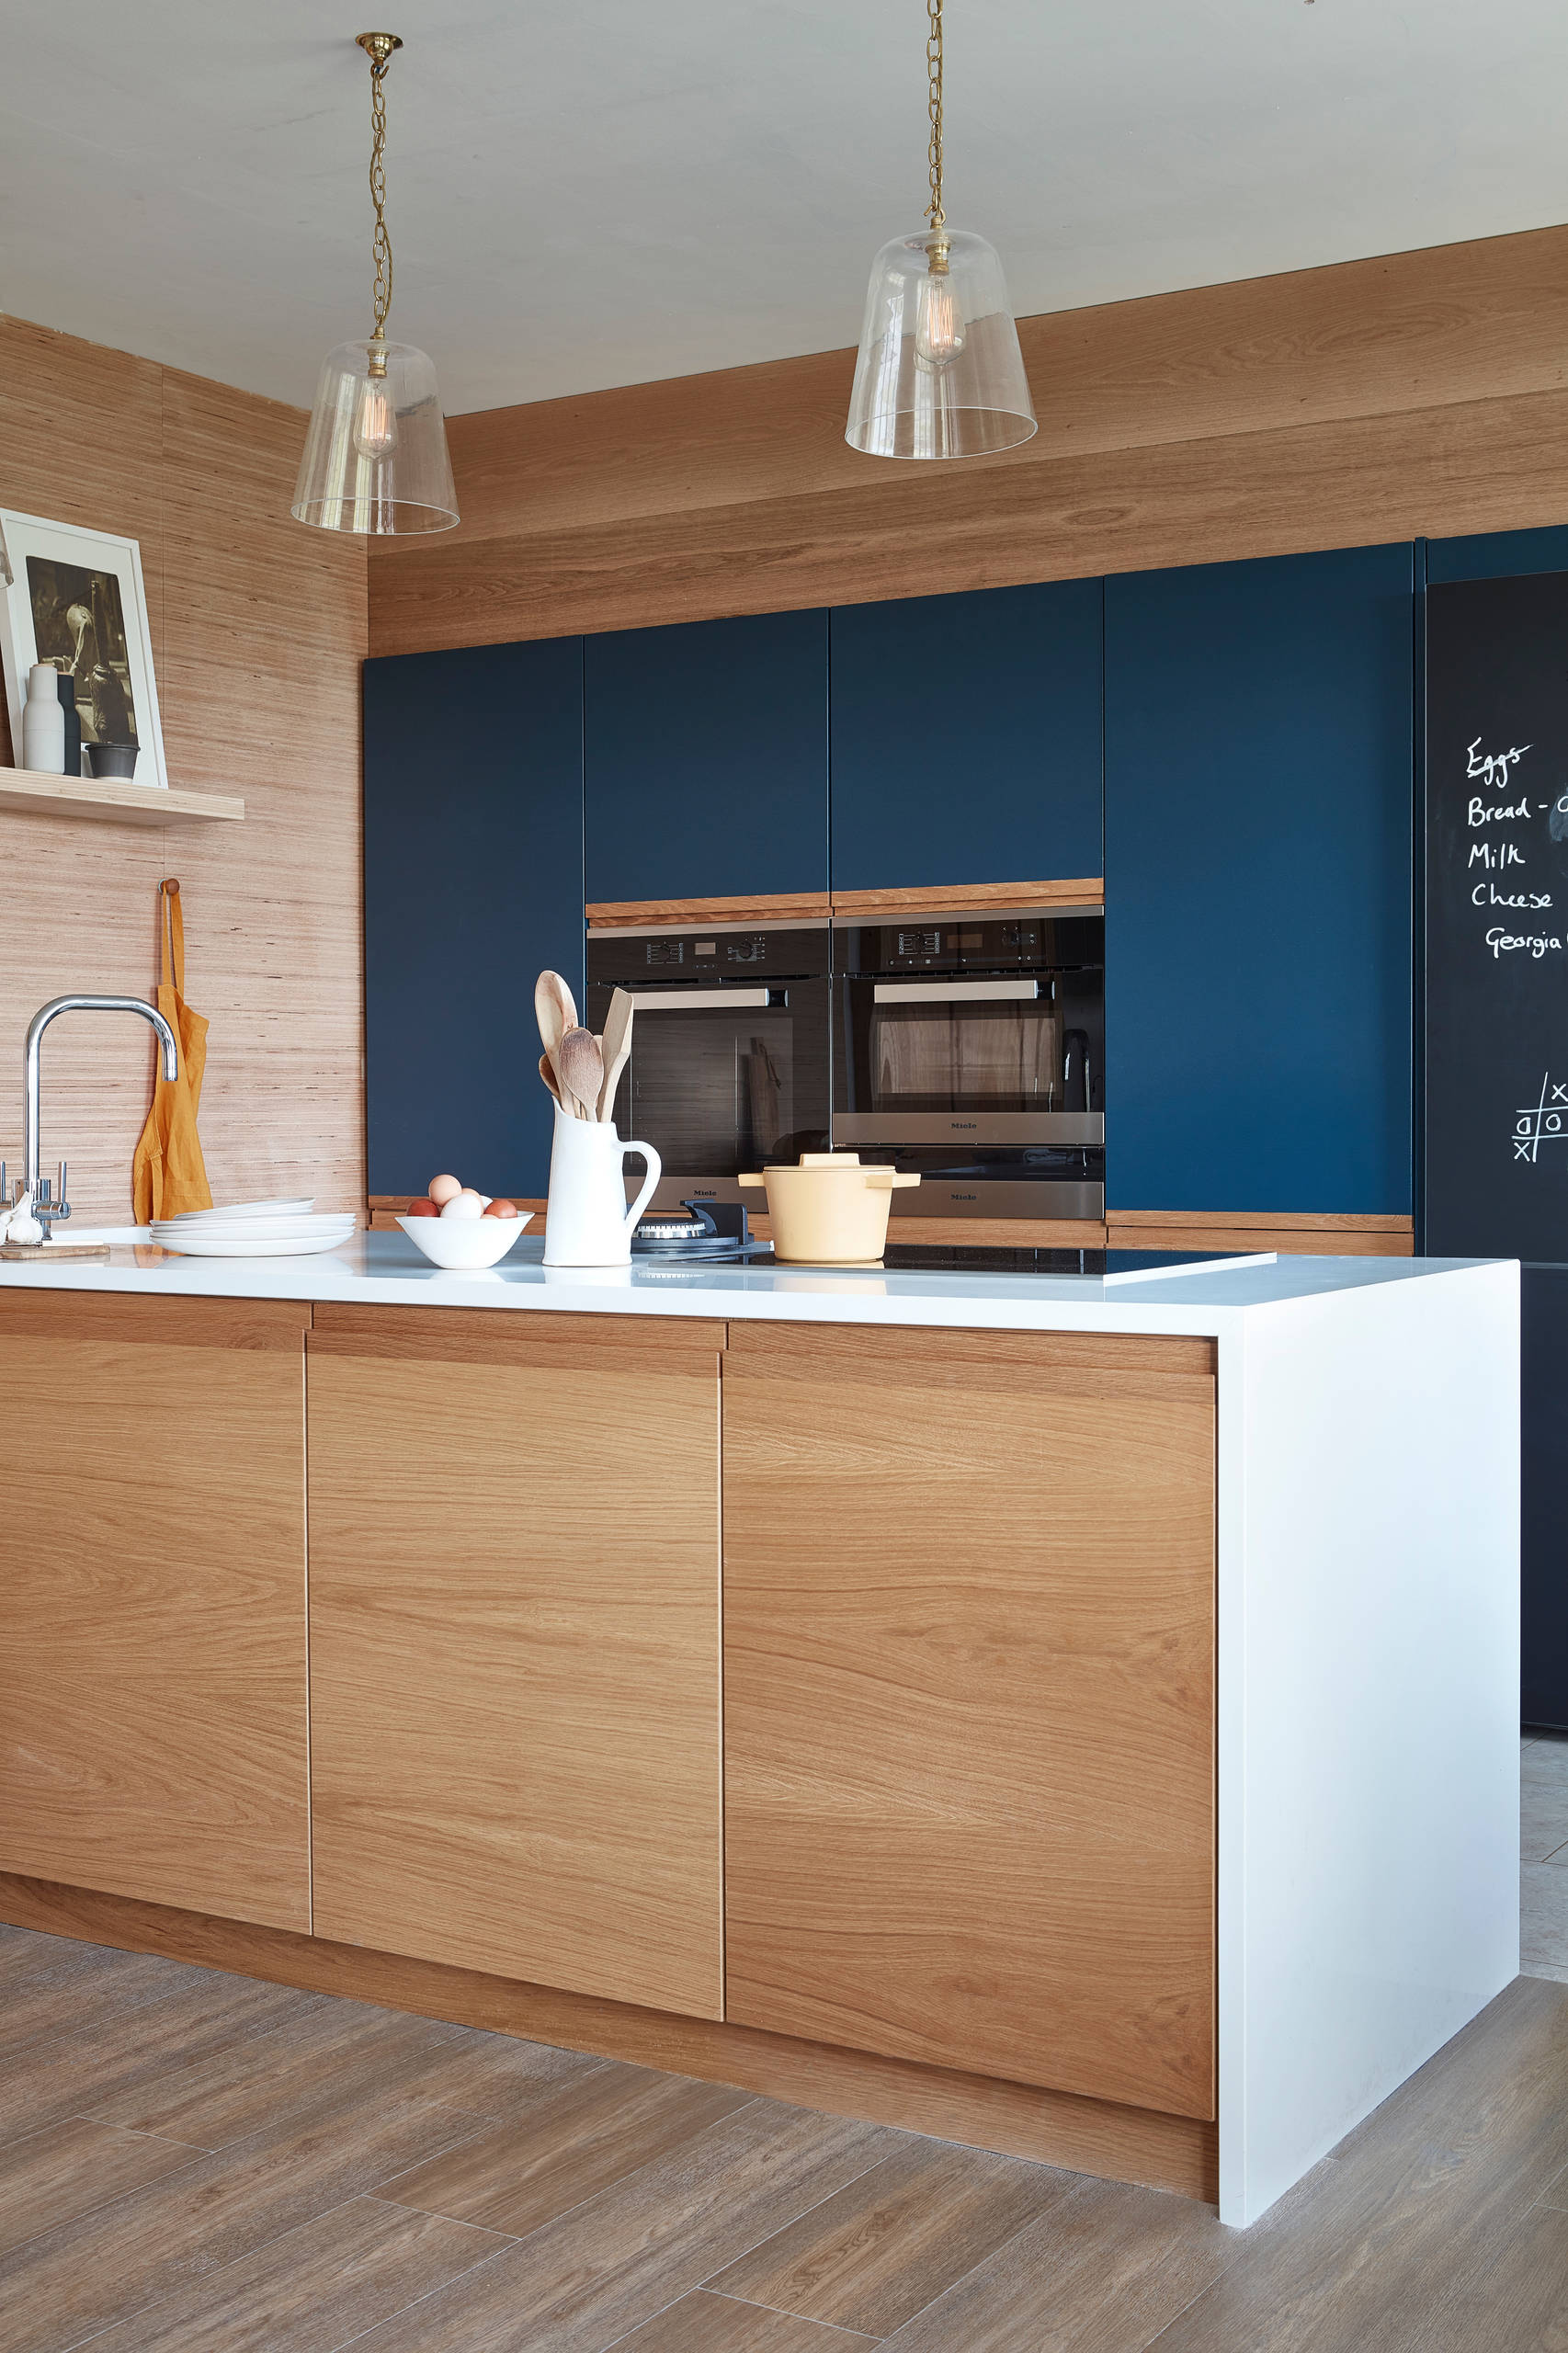 Chúng tôi yêu vẻ đẹp vừa ấm áp vừa vững chãi của căn bếp nhỏ với điểm nhấn là tủ bếp màu xanh lam đậm, bao bọc xung quanh là nội thất gỗ mộc mạc. Nếu tinh ý, bạn sẽ nhận ra bức tường sử dụng giấy dán, còn đảo bếp mới ốp gỗ thật.